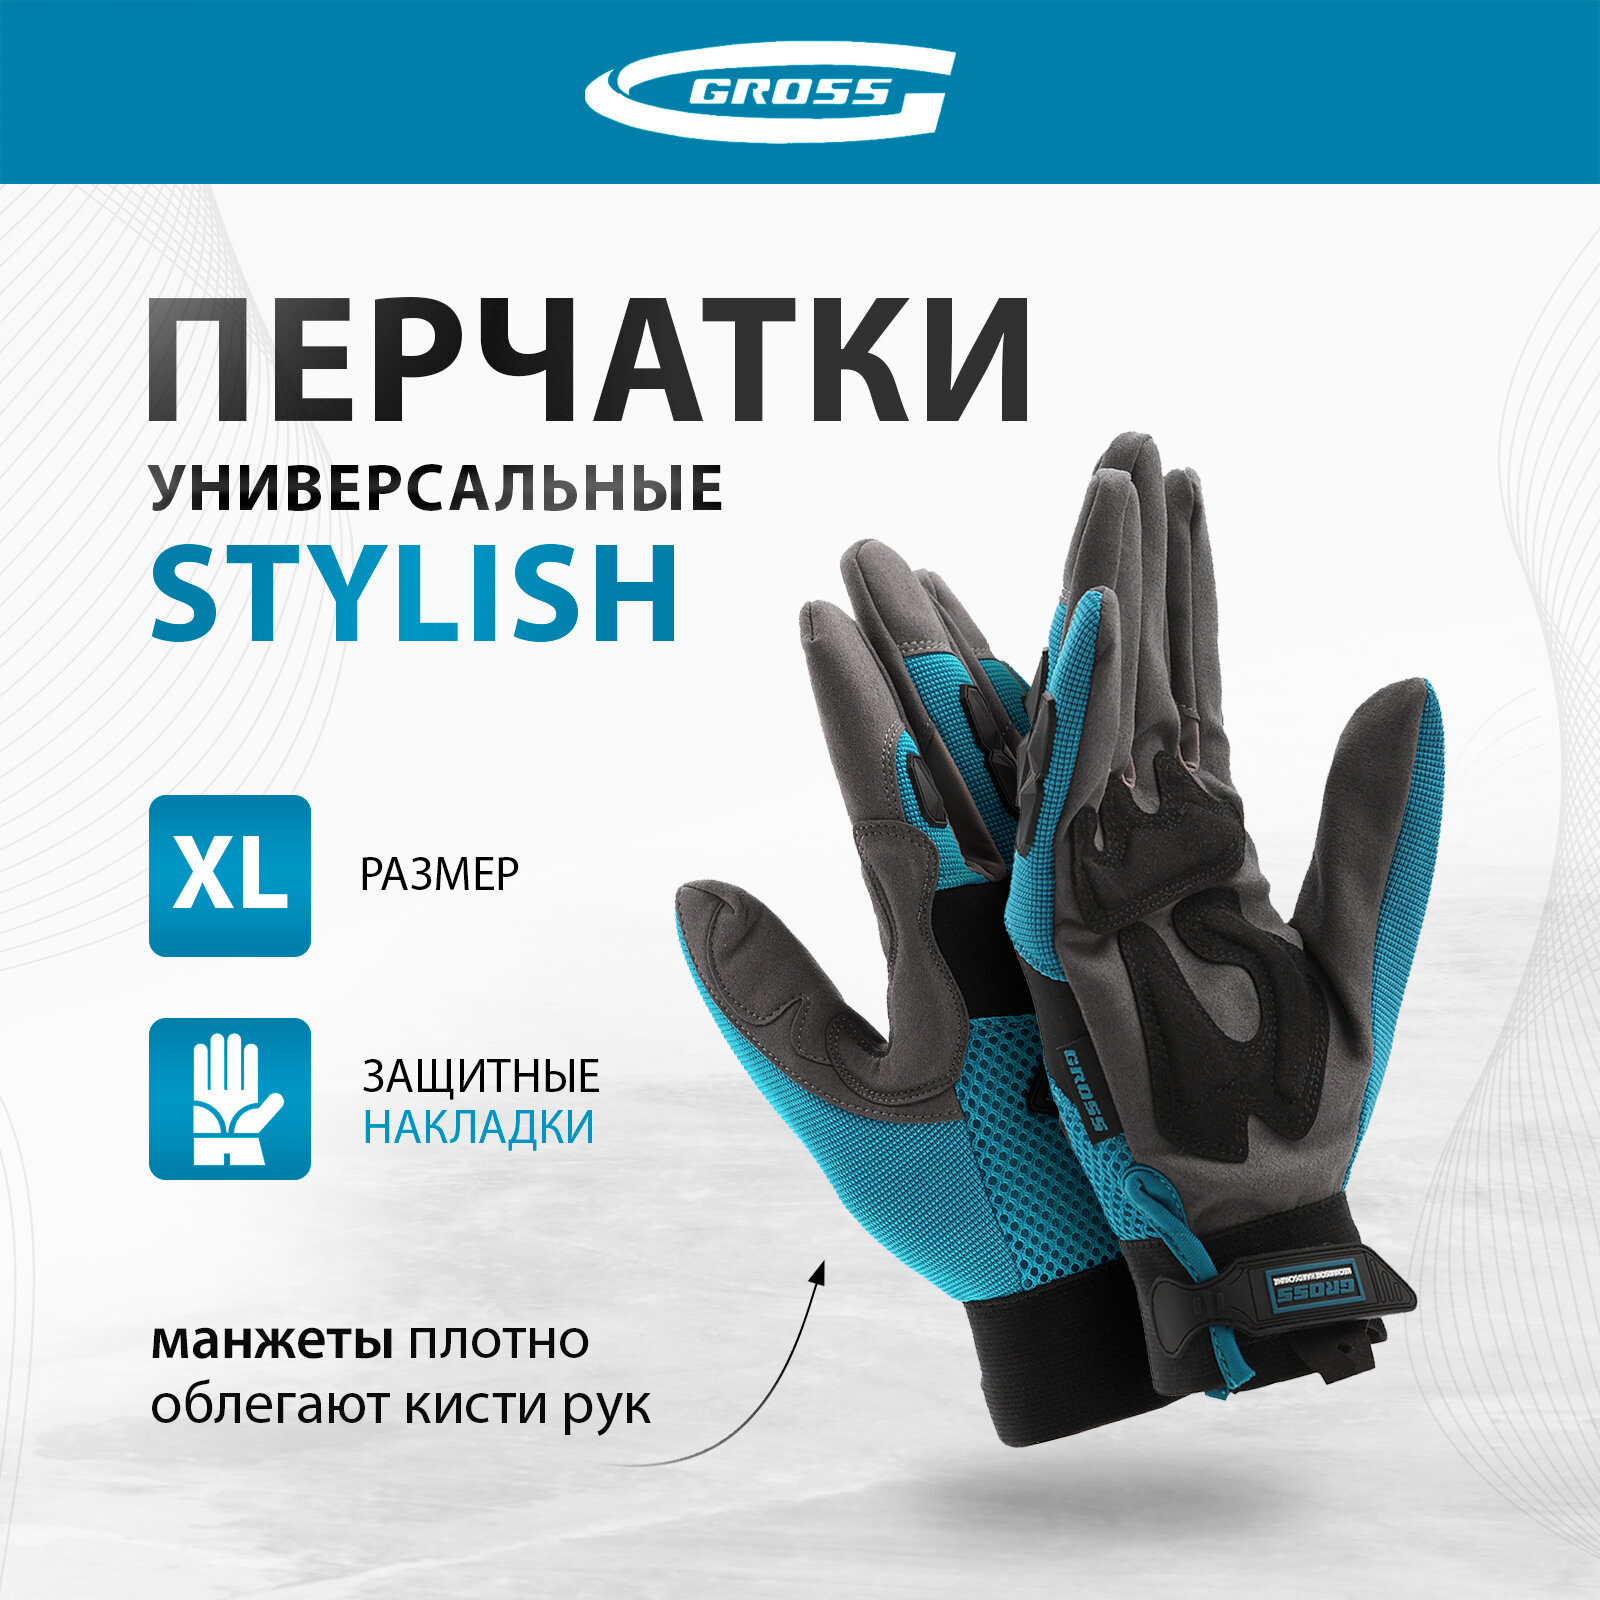 Перчатки универсальные комбинированные с защитными накладками Gross STYLISH размер XL (10) 90320